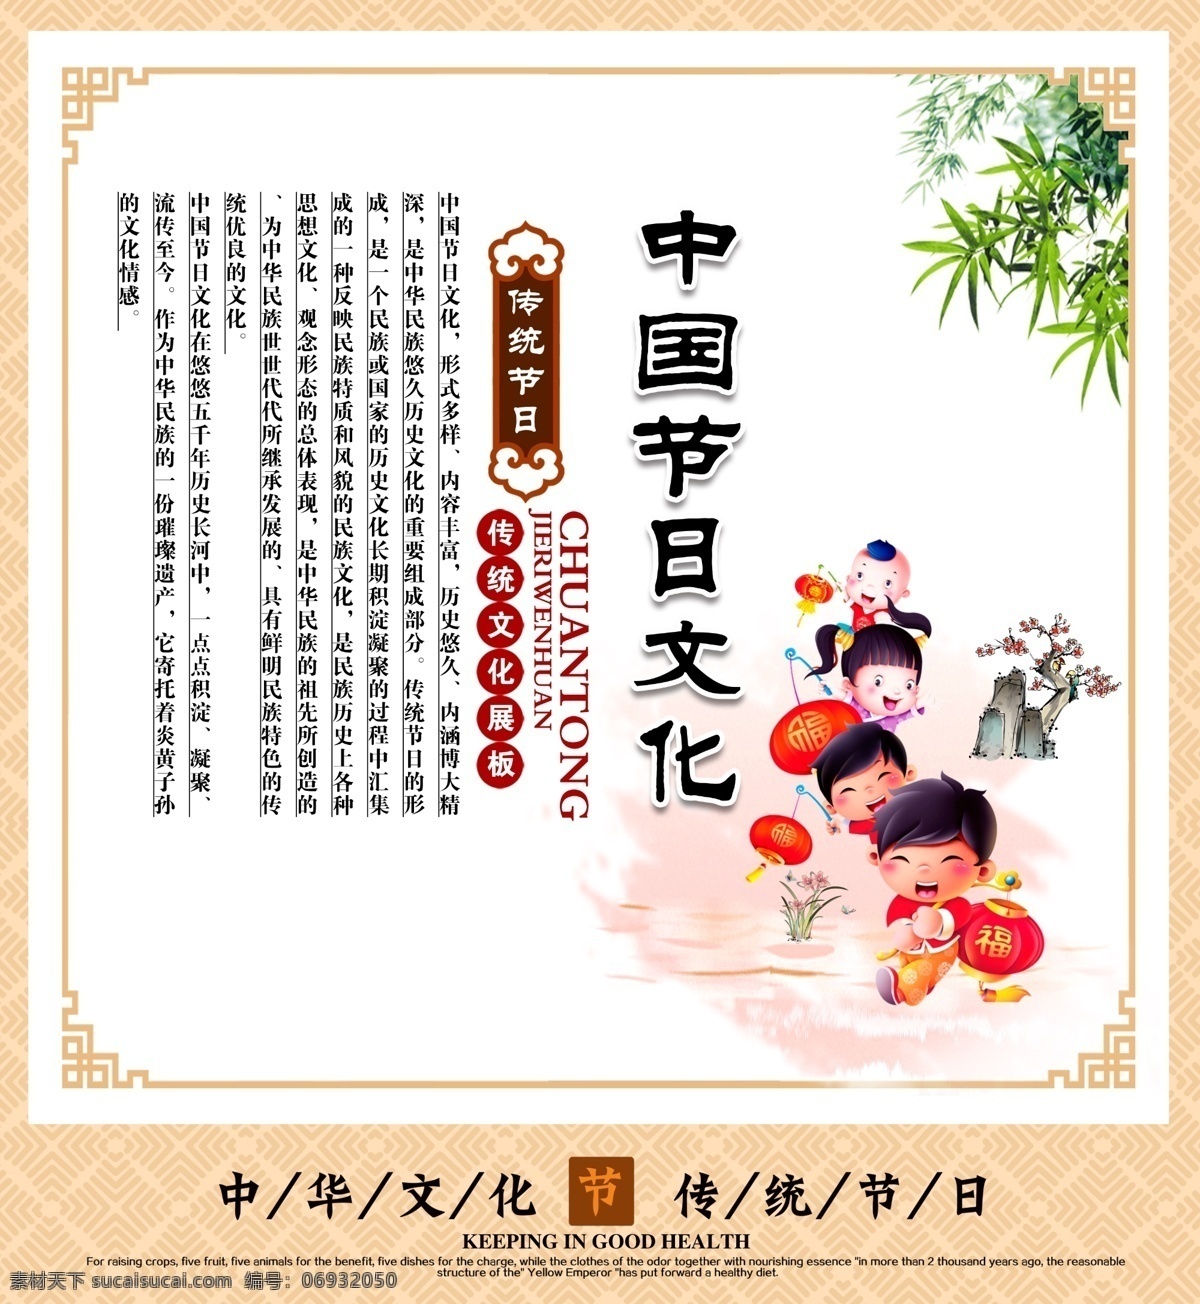 中国节日文化 传统文化 展板 文化 节日 文化艺术 节日庆祝